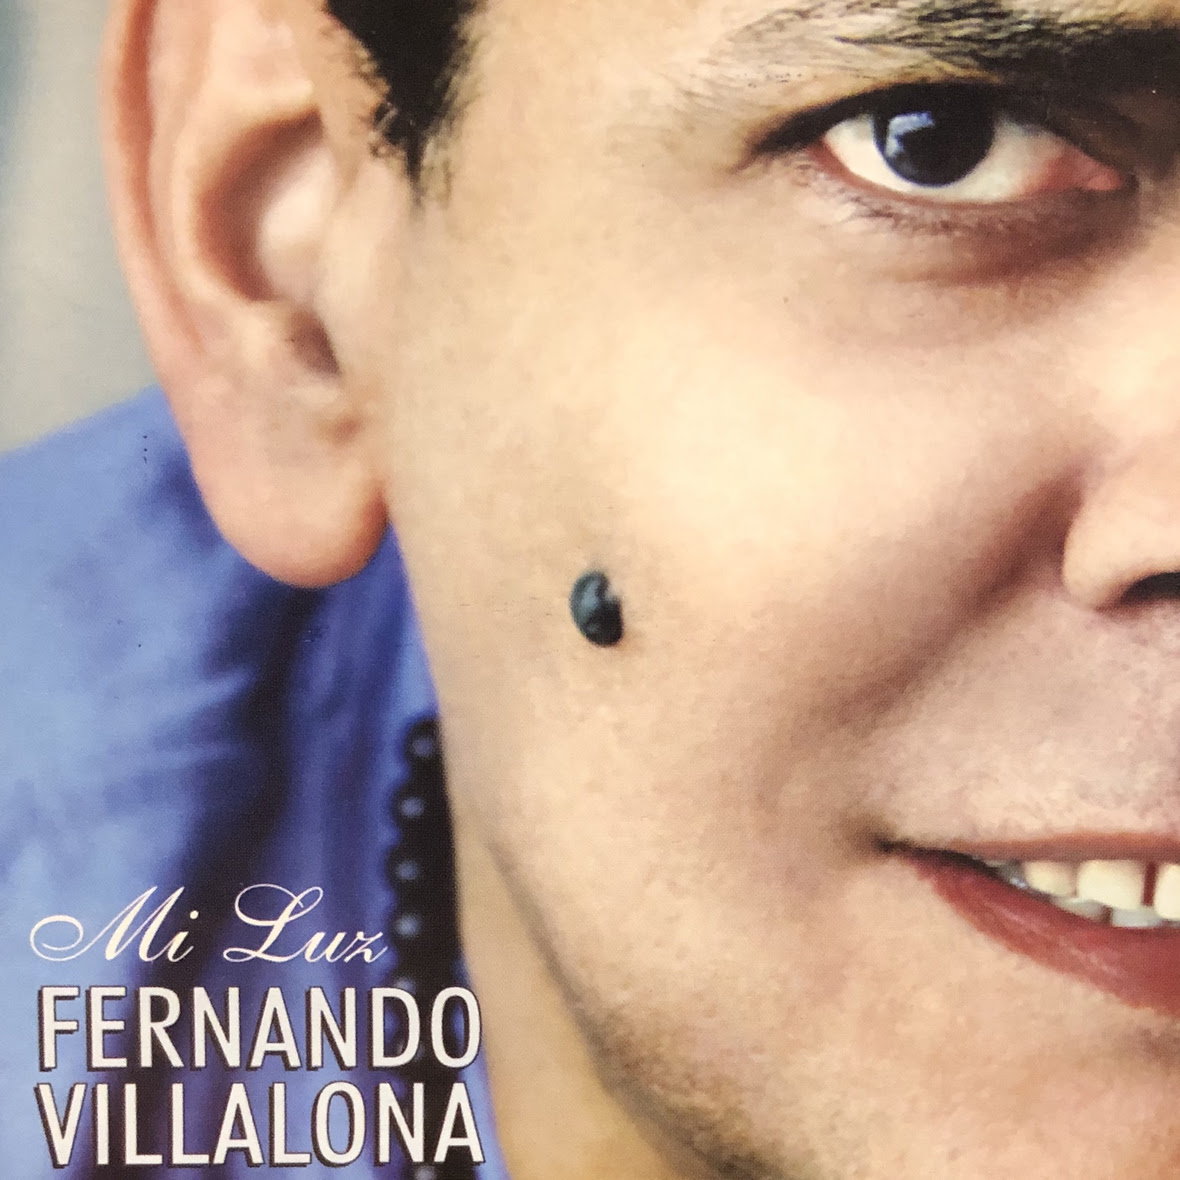 Fernando Villalona lanza disco cristiano "Mi Luz"